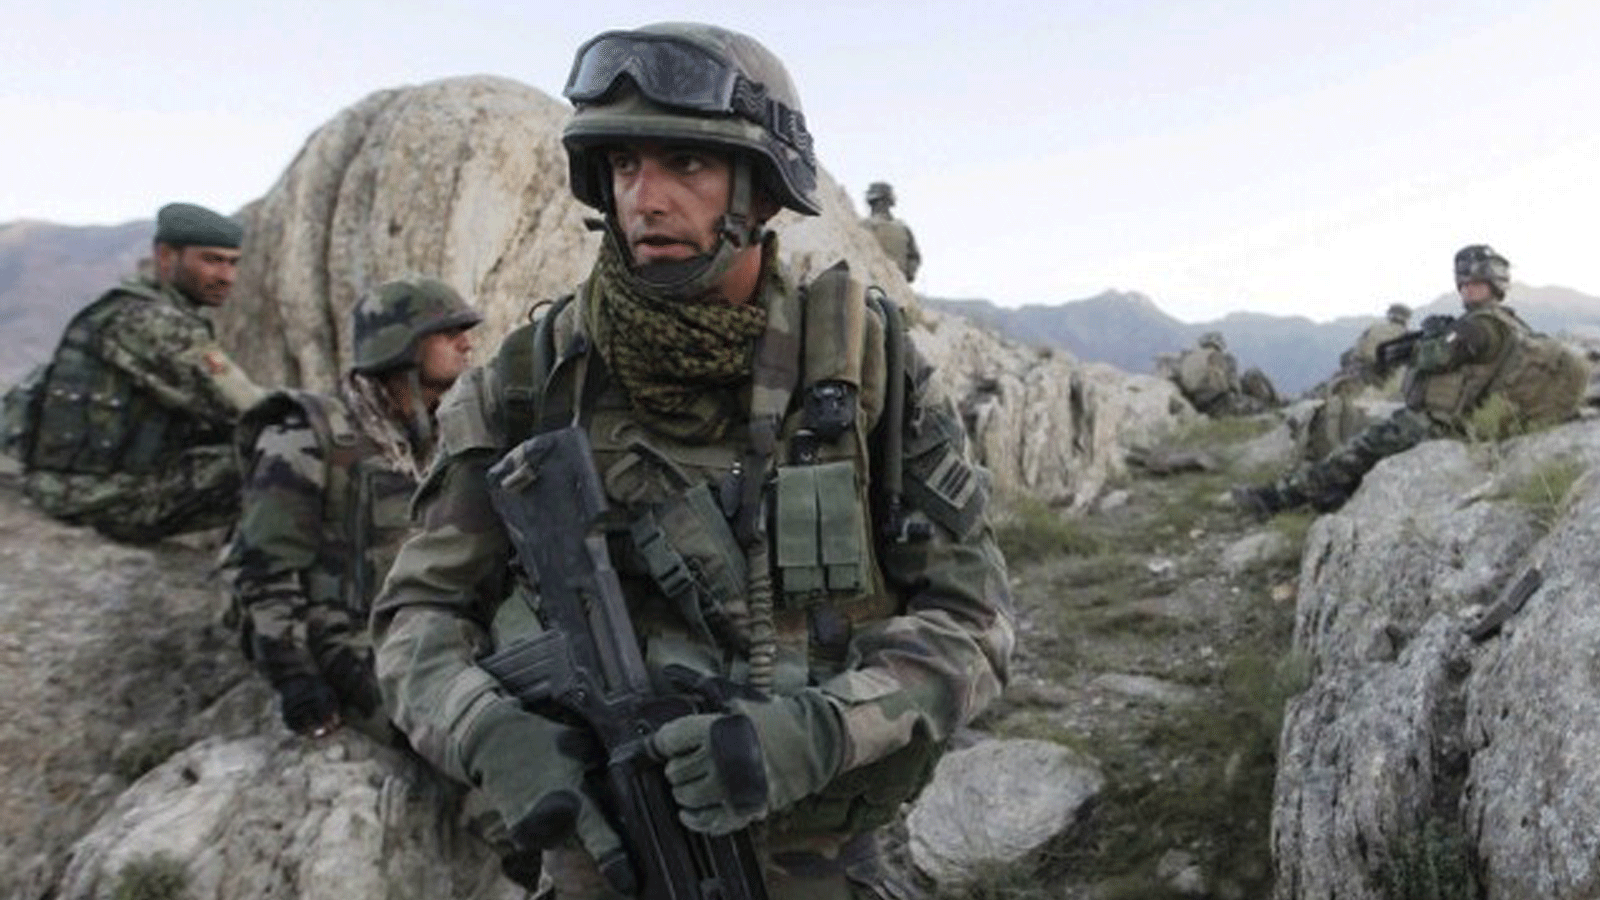 صورة تم التقاطها في 21 أيلول/يسبتمبر 2010 تُظهر جنديًا فرنسيًا (ج) يقوم بدورية مع جنود أفغان في مقاطعة كابيسا في أفغانستان. 